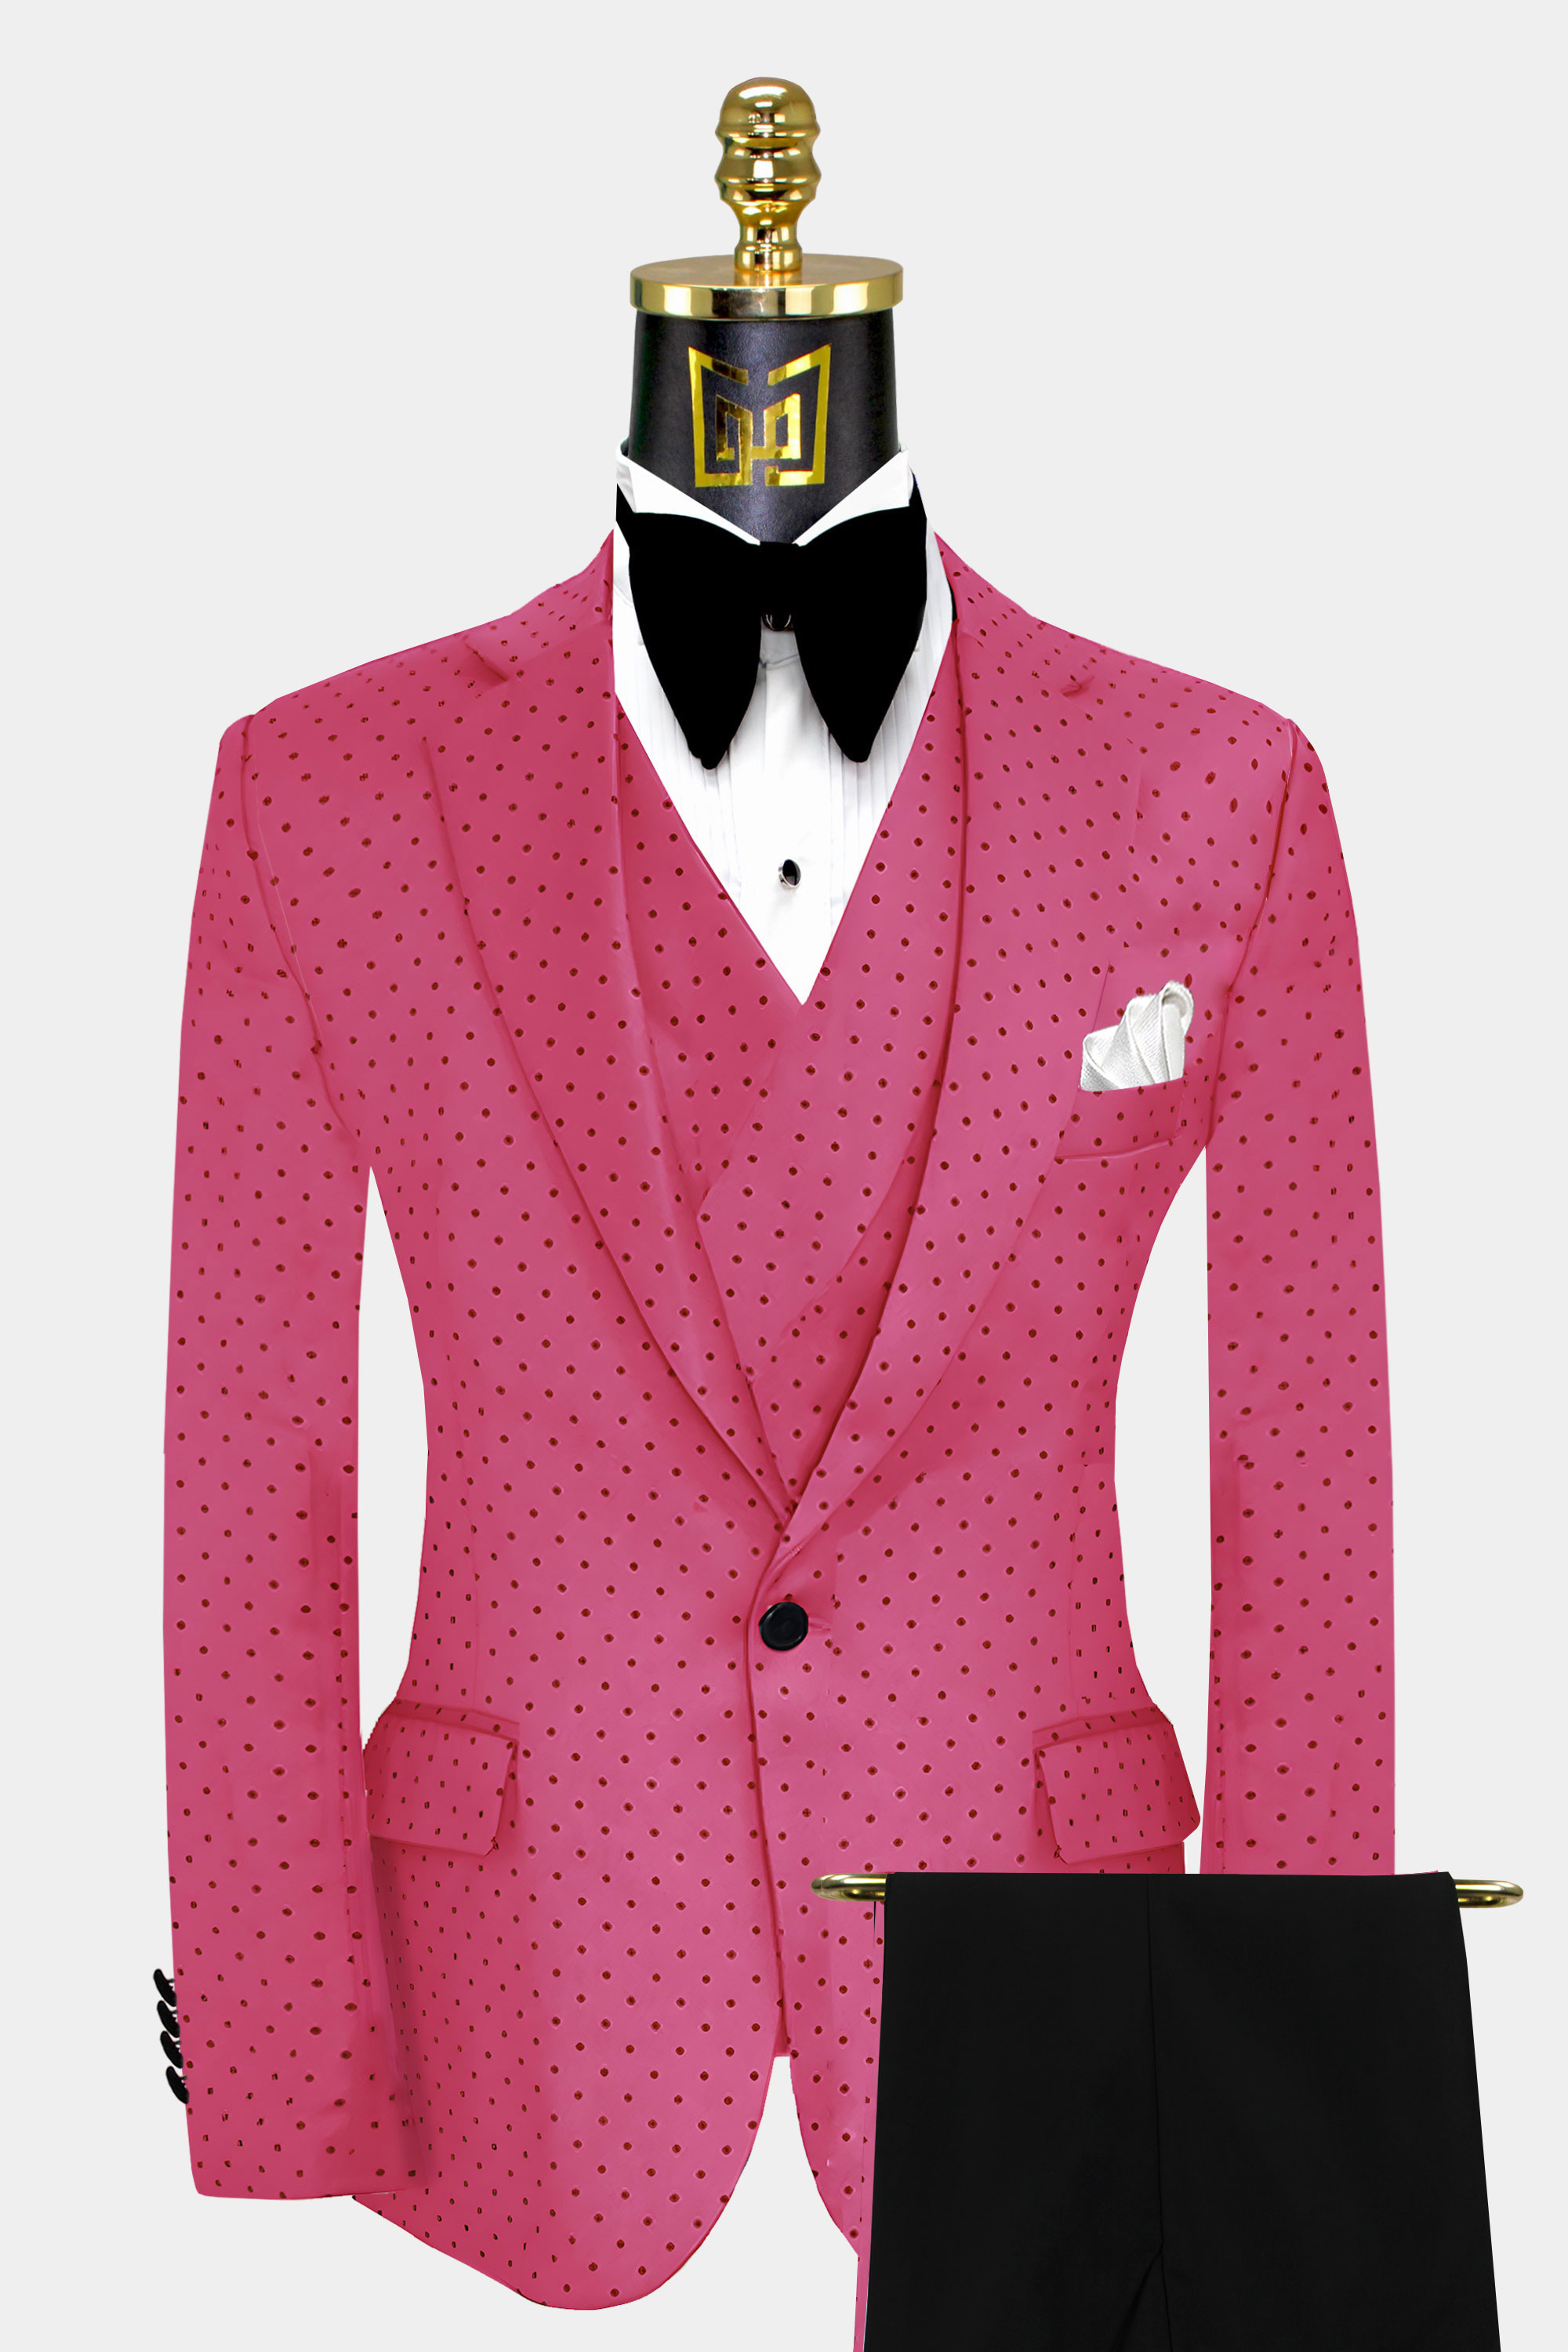 Hot Pink Polka Dot Suit | Gentleman's Guru